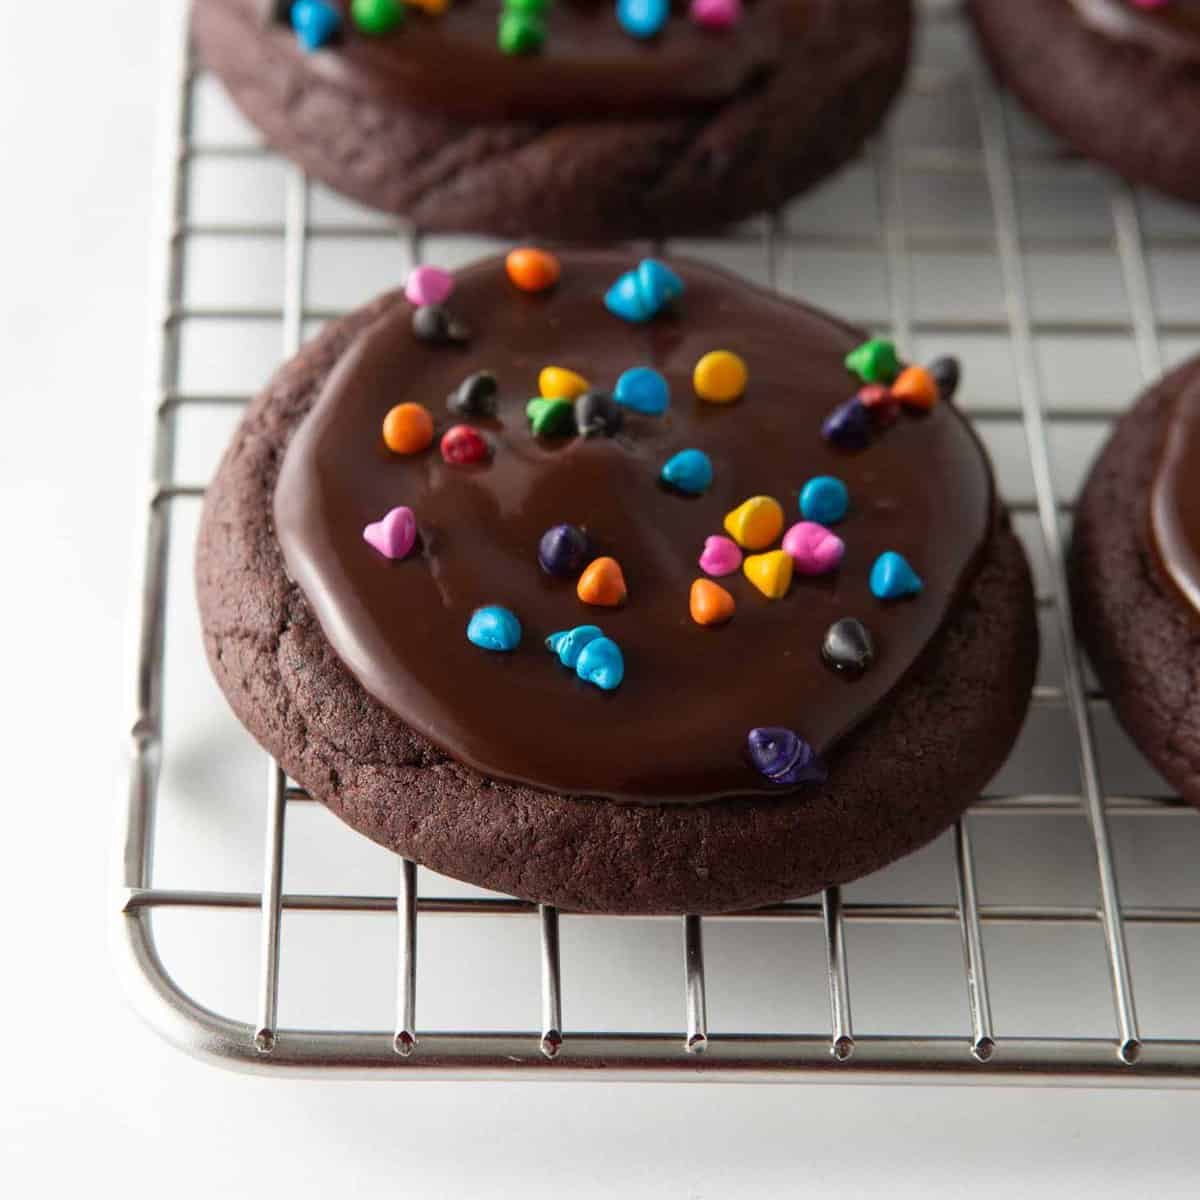 cosmic brownie cookies